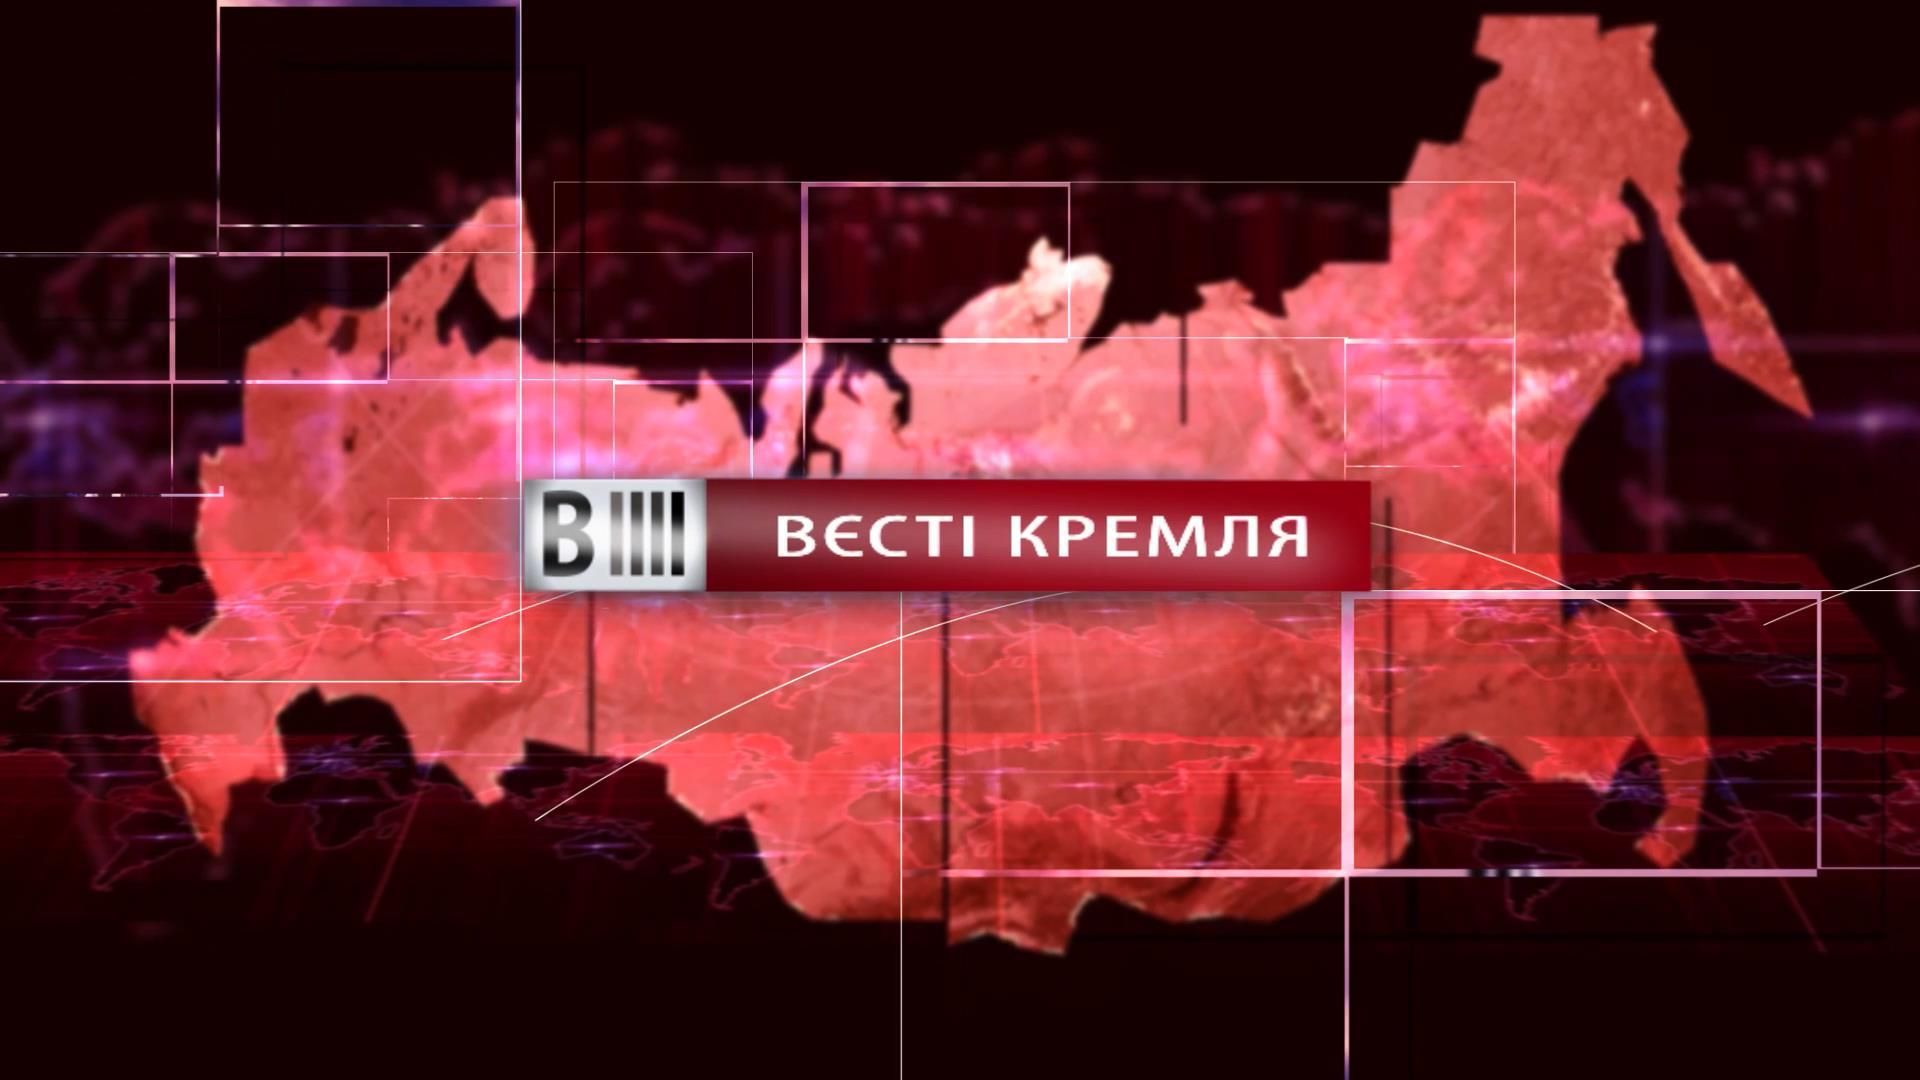 Смотрите "Вести Кремля". Банковское дно России. Спасительная болгарка